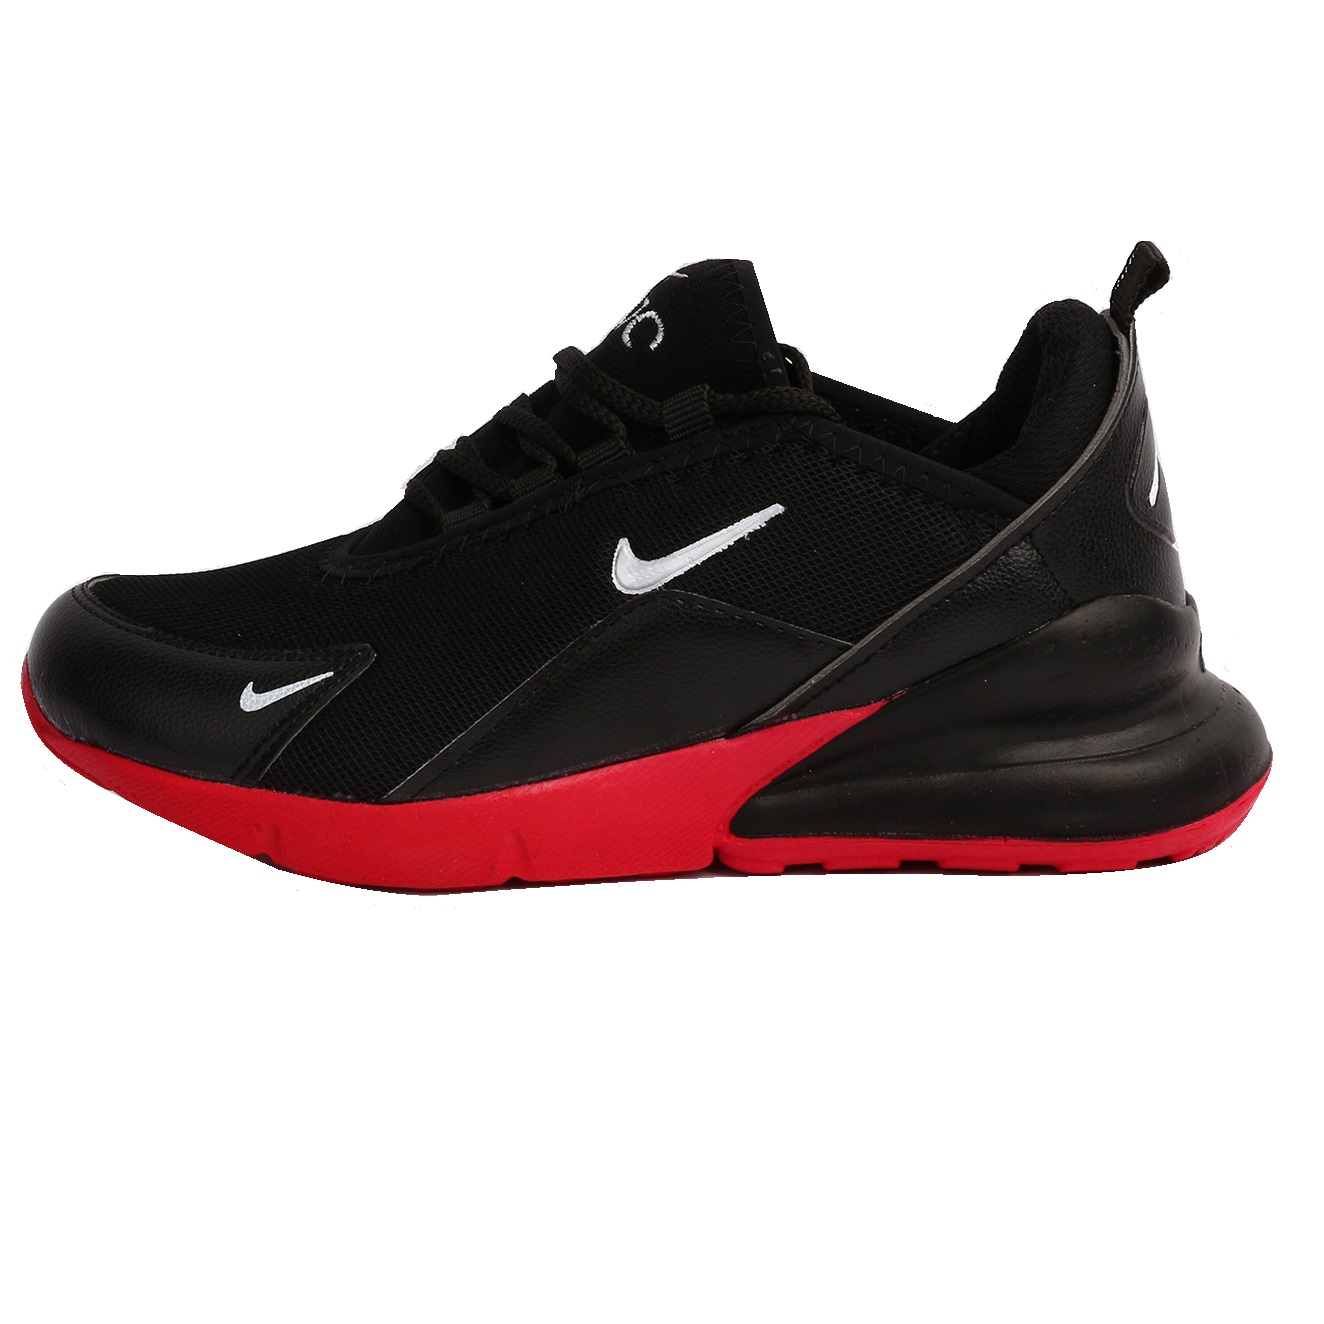 : کفش مخصوص دویدن مردانه مدل 27ِ.D.r.j.e رنگ قرمز